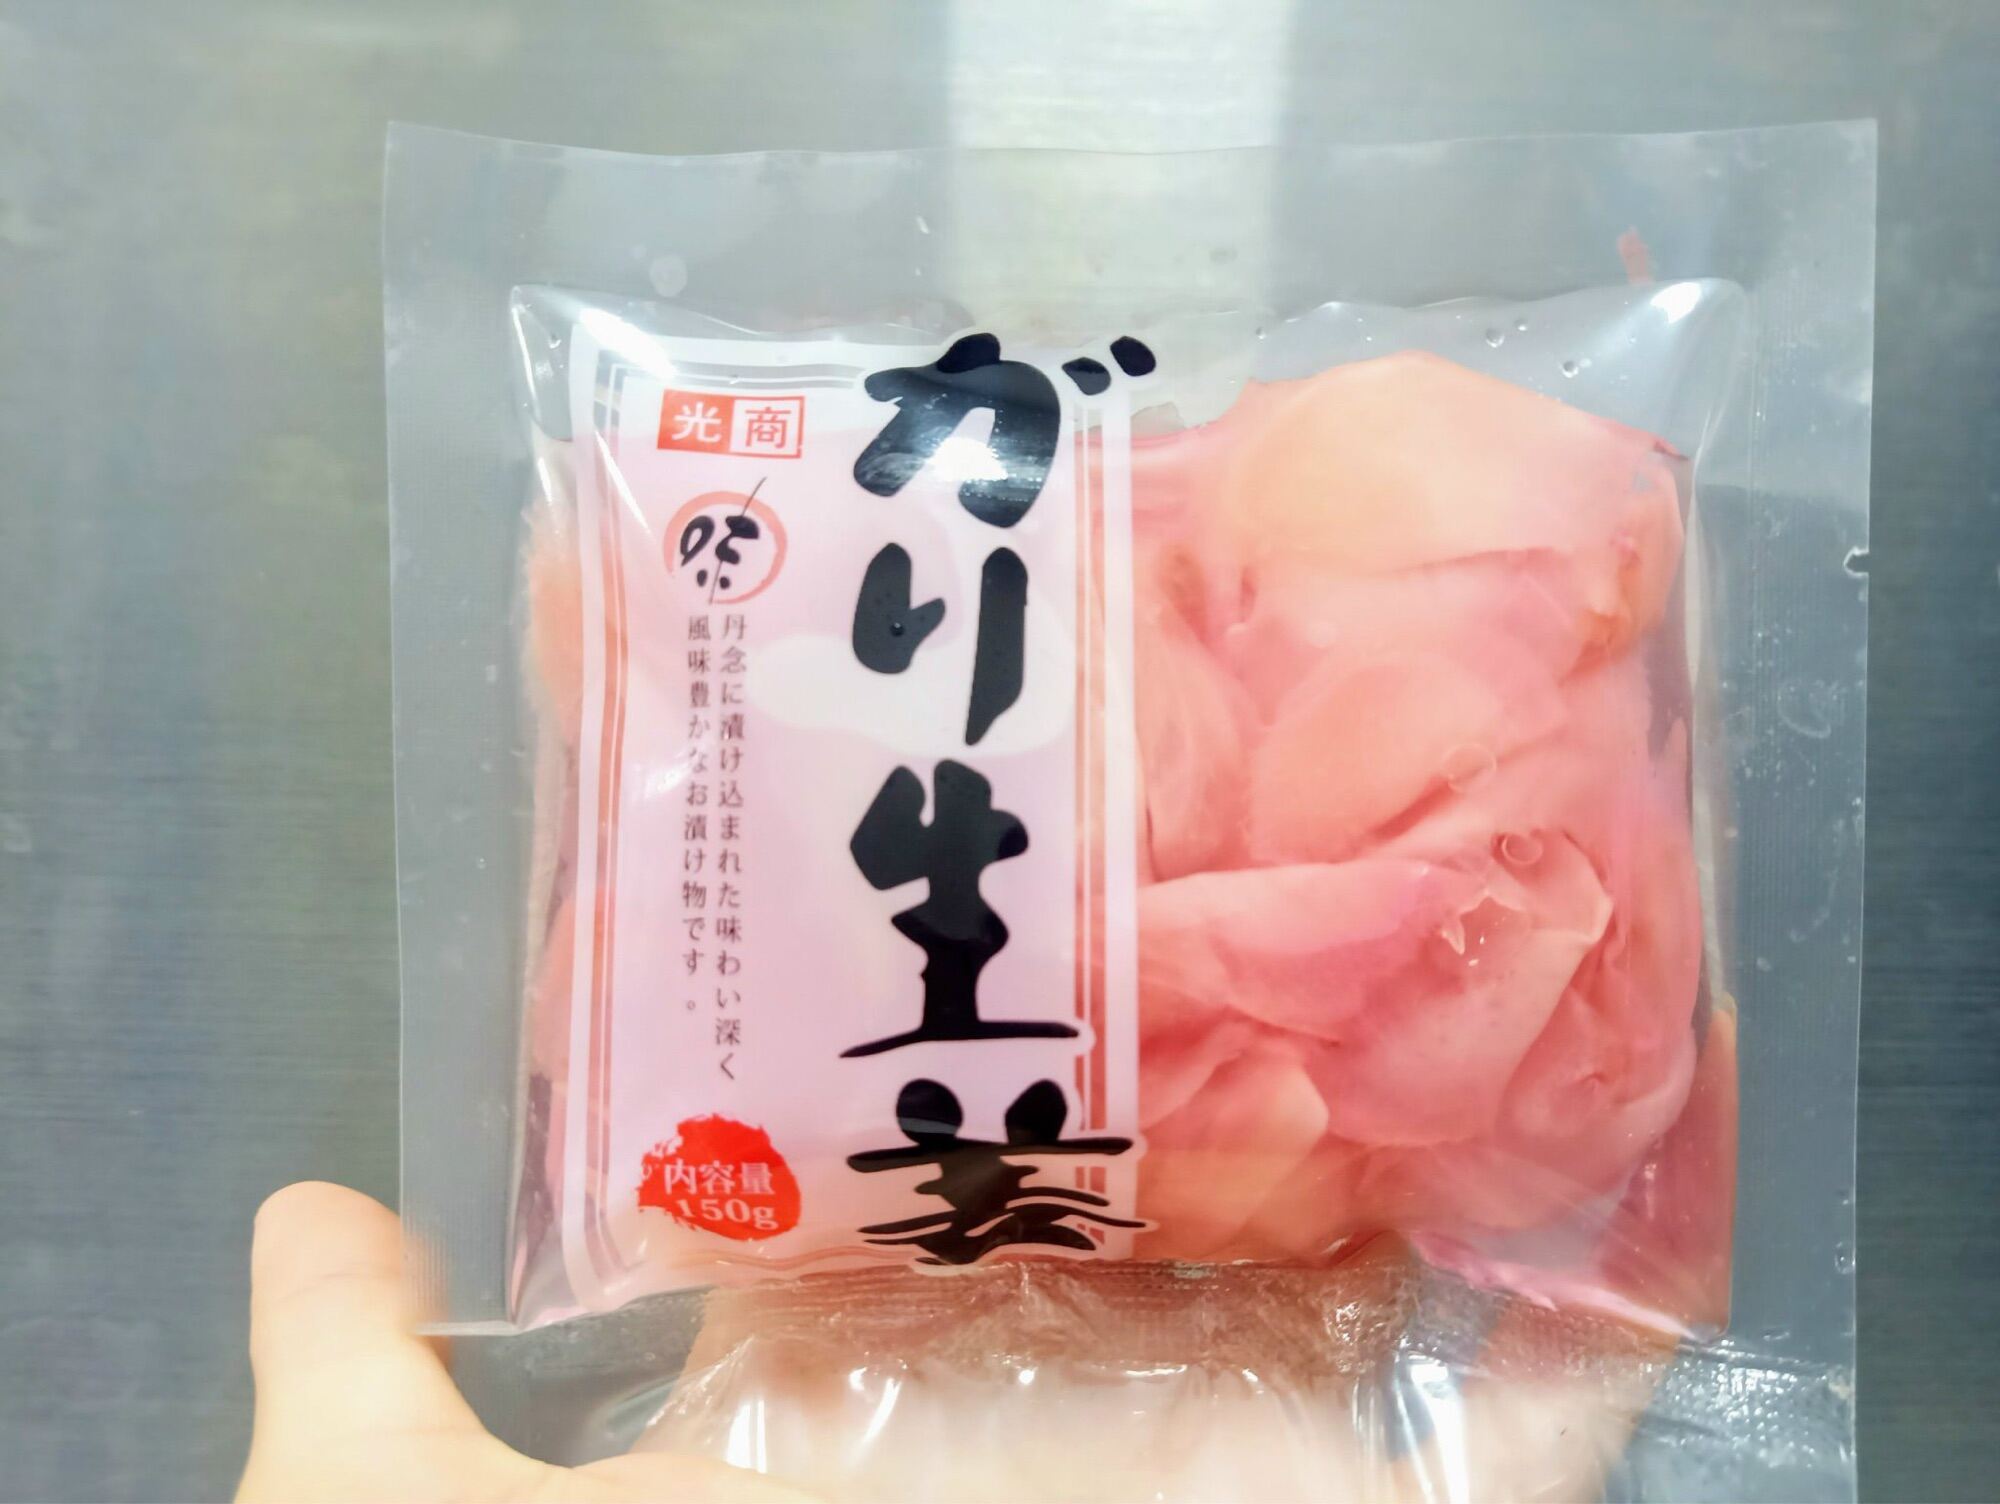 Gừng hồng Gari gói 150g được nhập khẩu và bảo quản trực tiếp tử Nhật Bản nhà sản xuất KOSHO